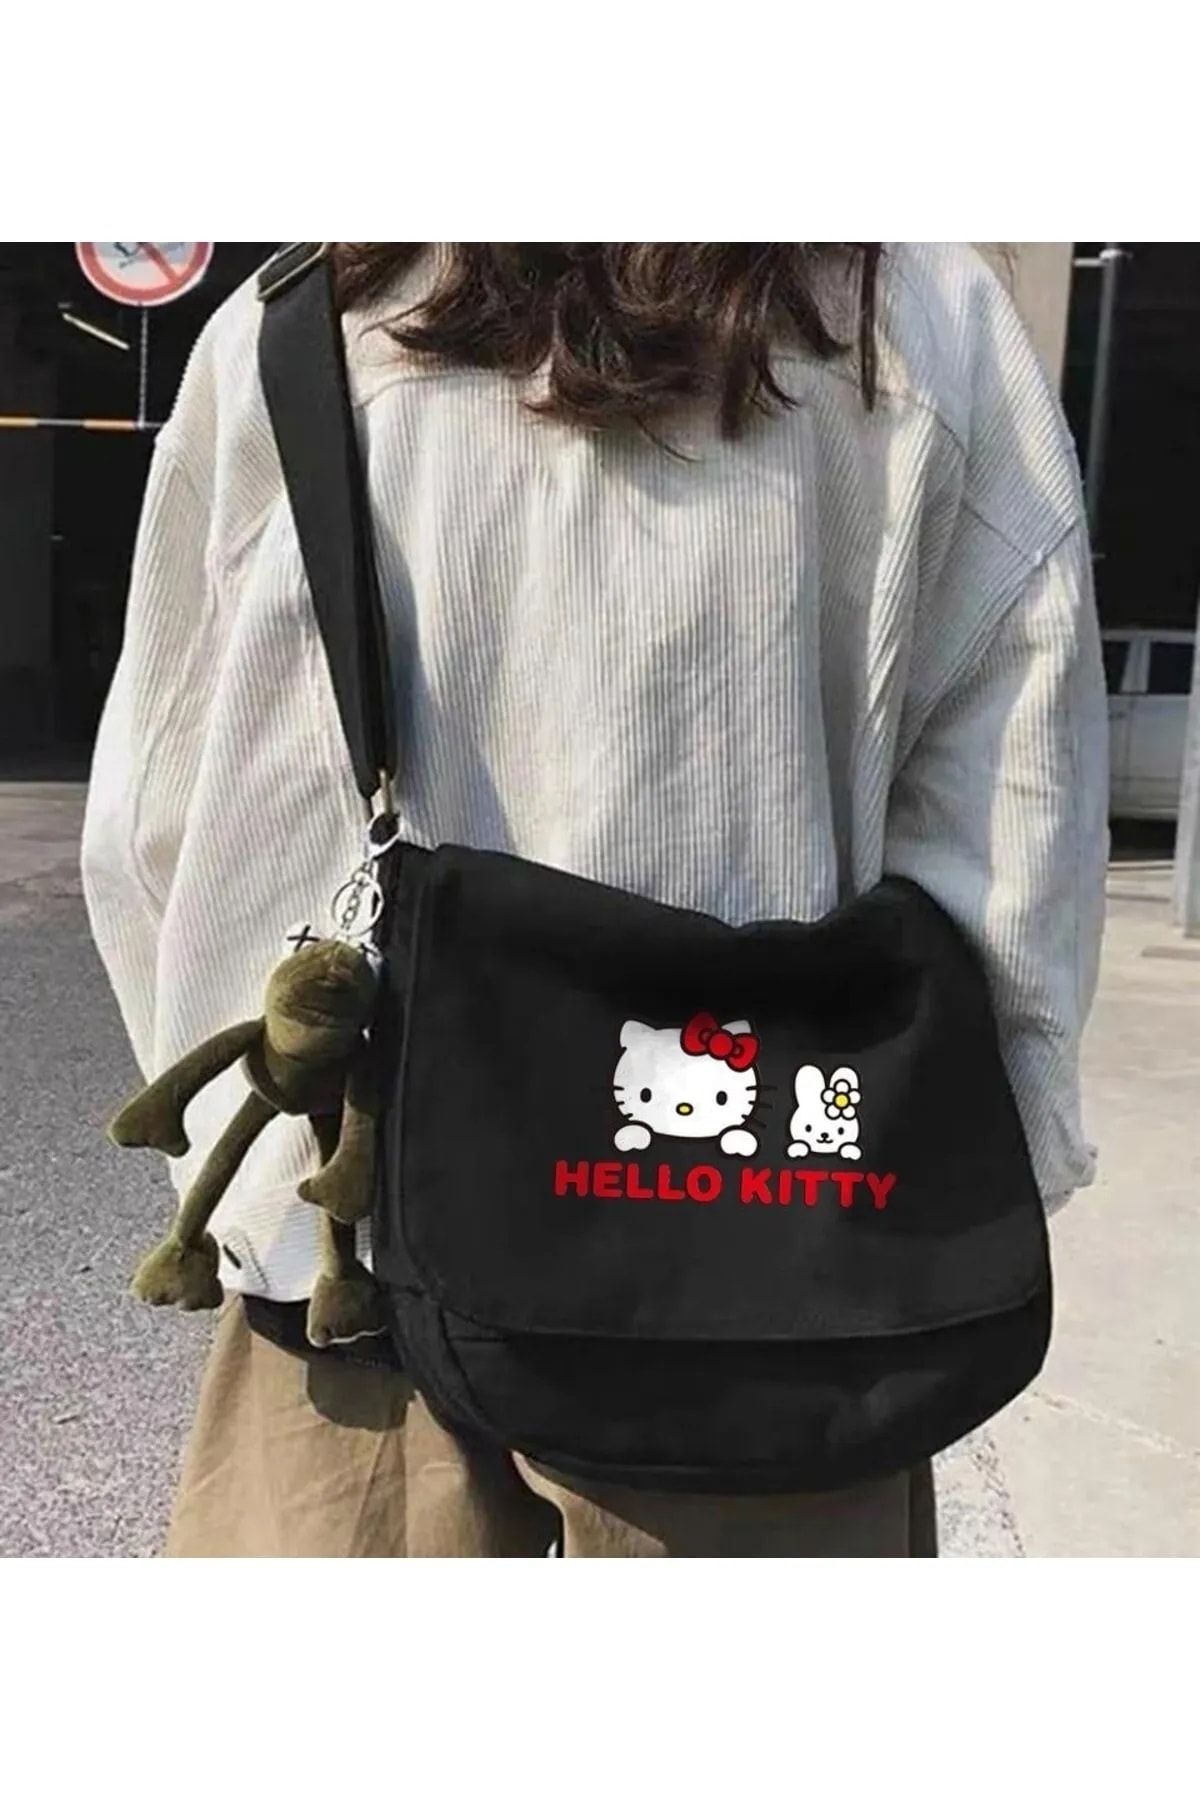 Gofeel Hello Kitty Baskılı Postacı Çanta Unisex Iç Hacmi Geniş Siyah Postacı Çanta